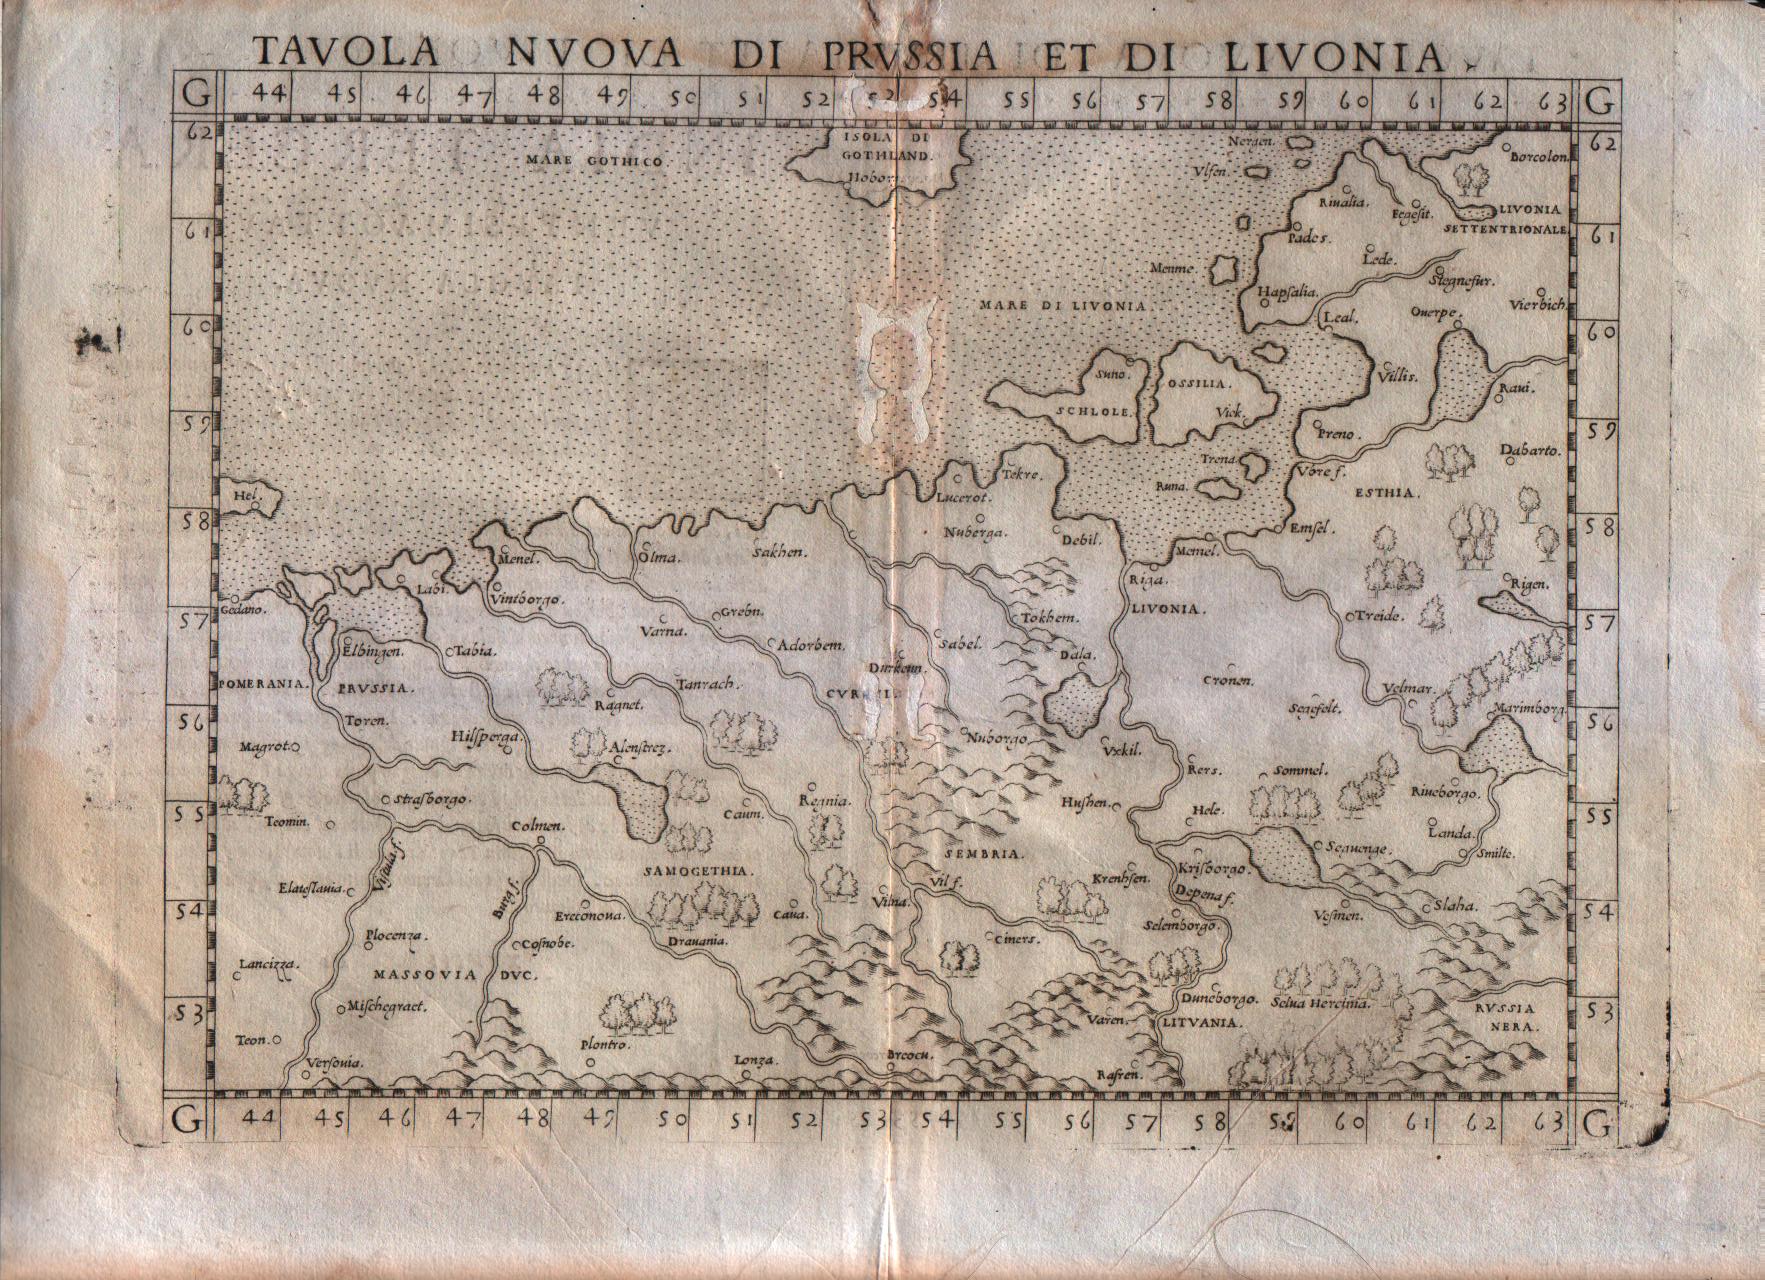 Tavola nuova di Prussia et di Livonia